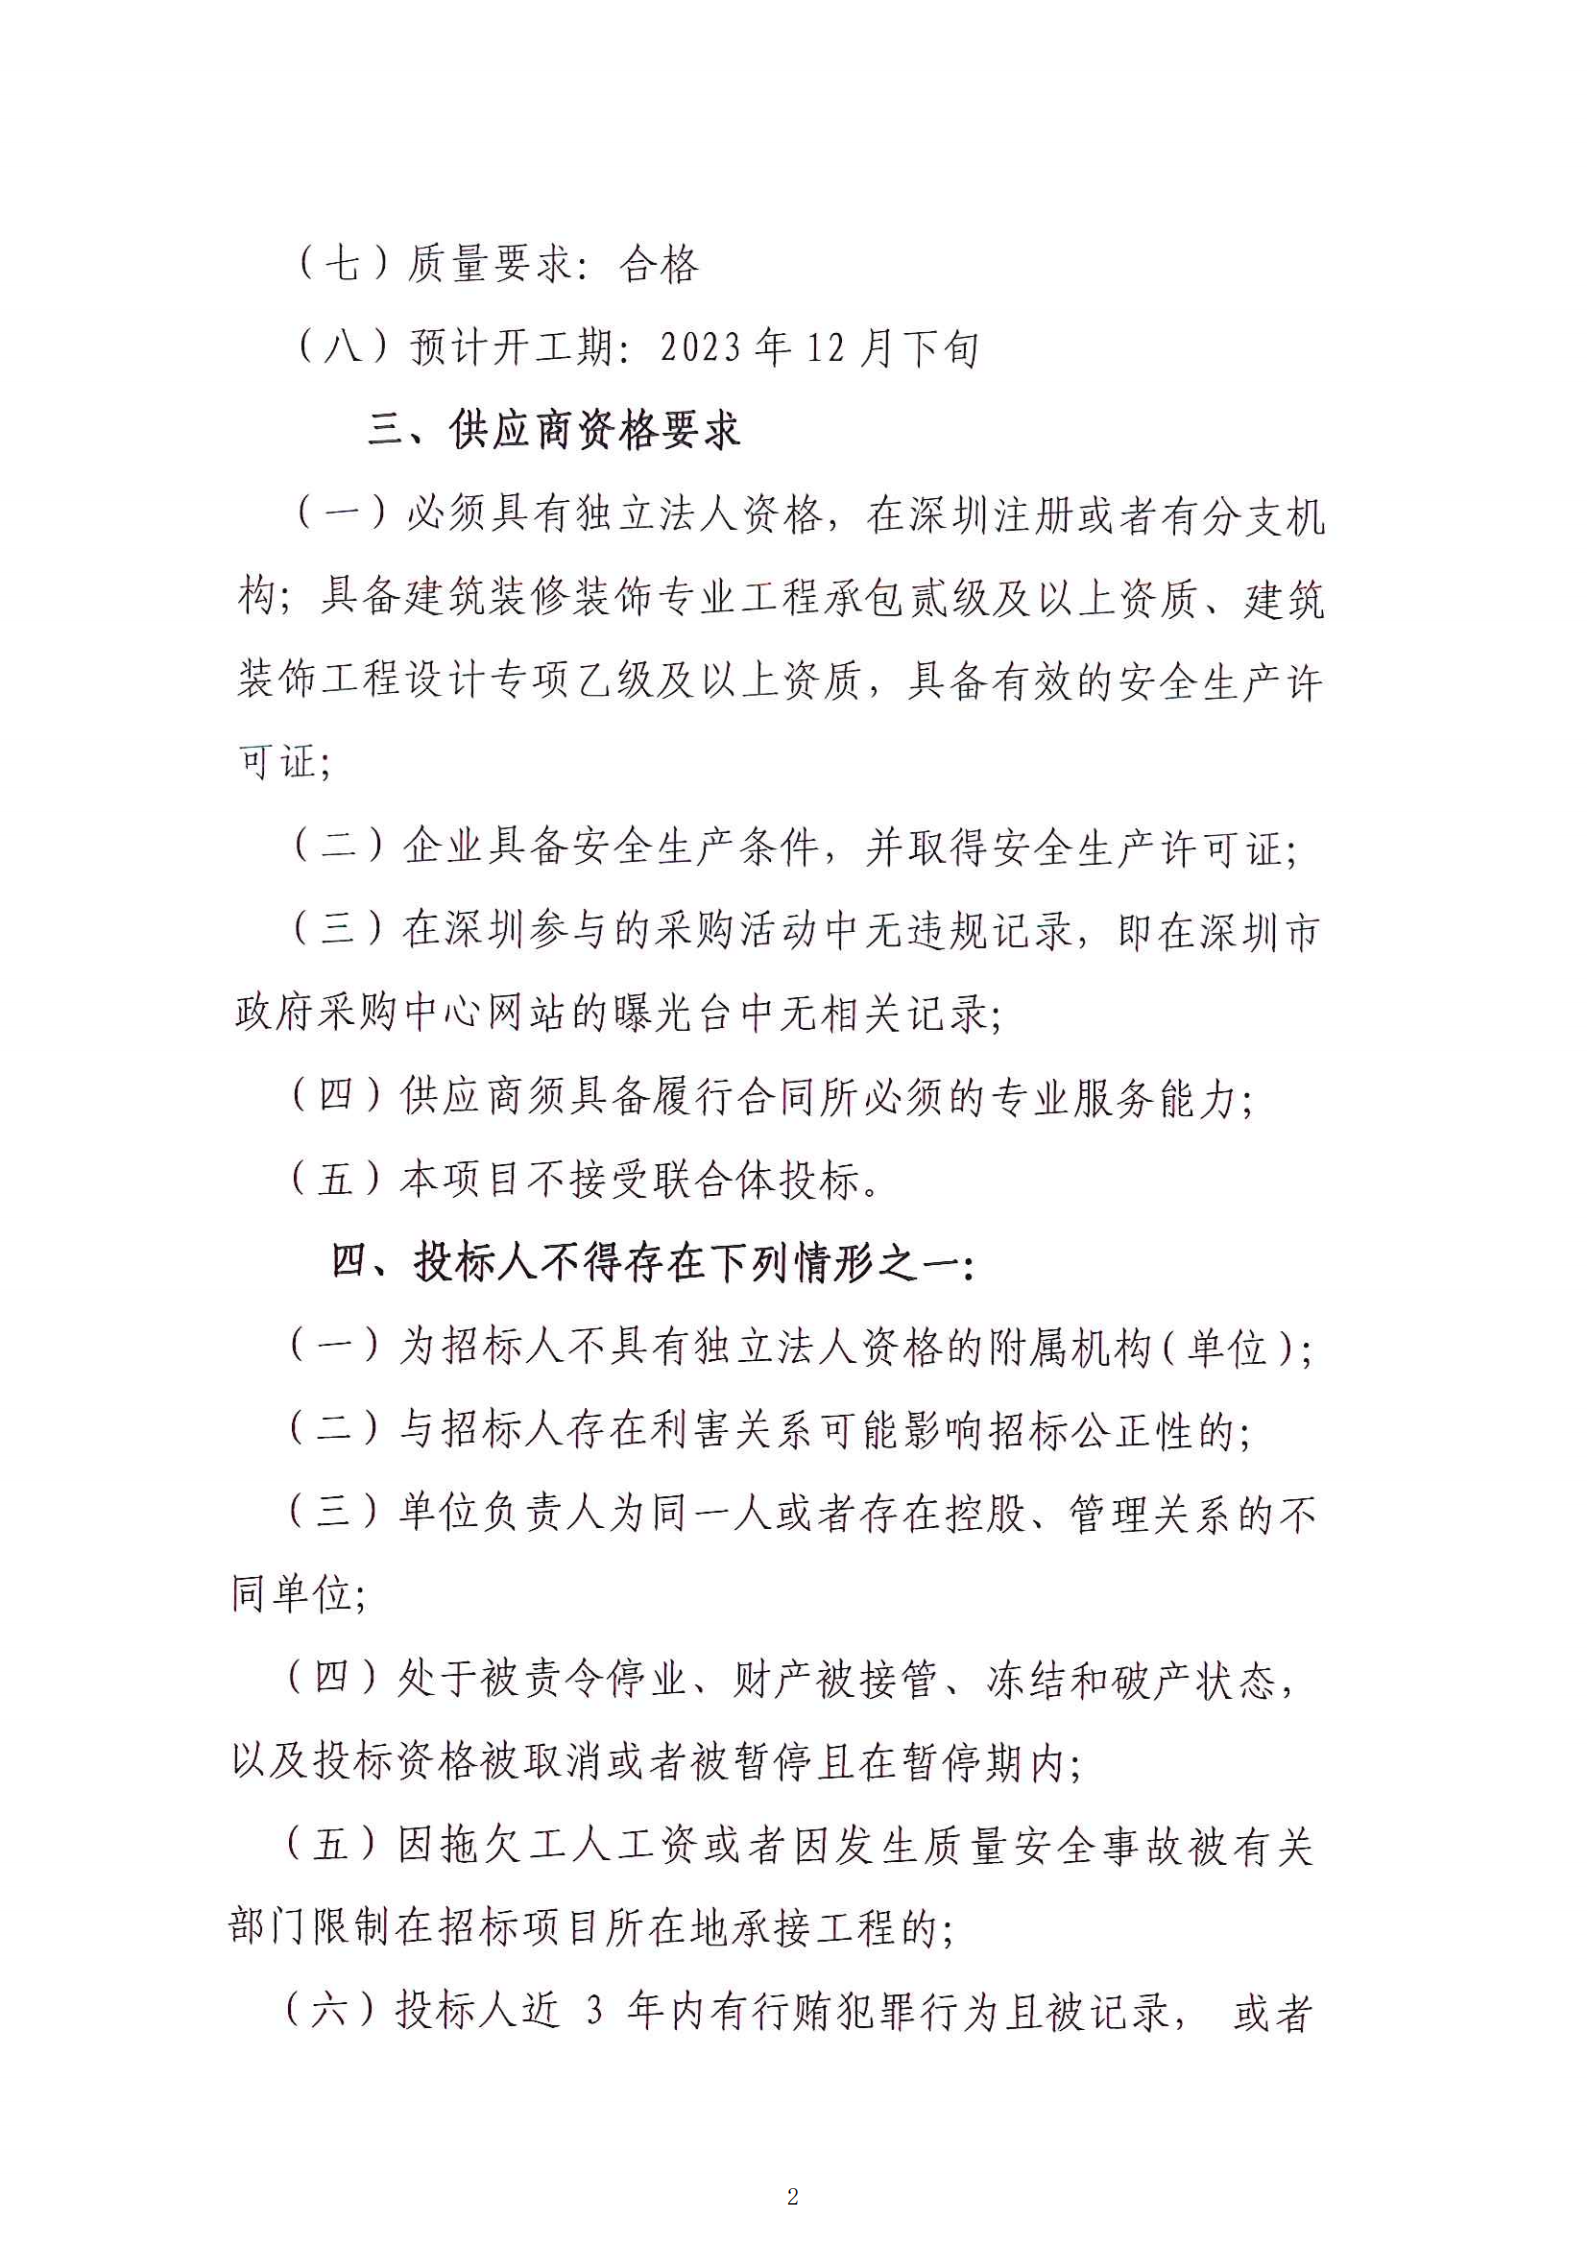 【公示公告】深圳市绿色金融协会 装修工程施工项目招标公告